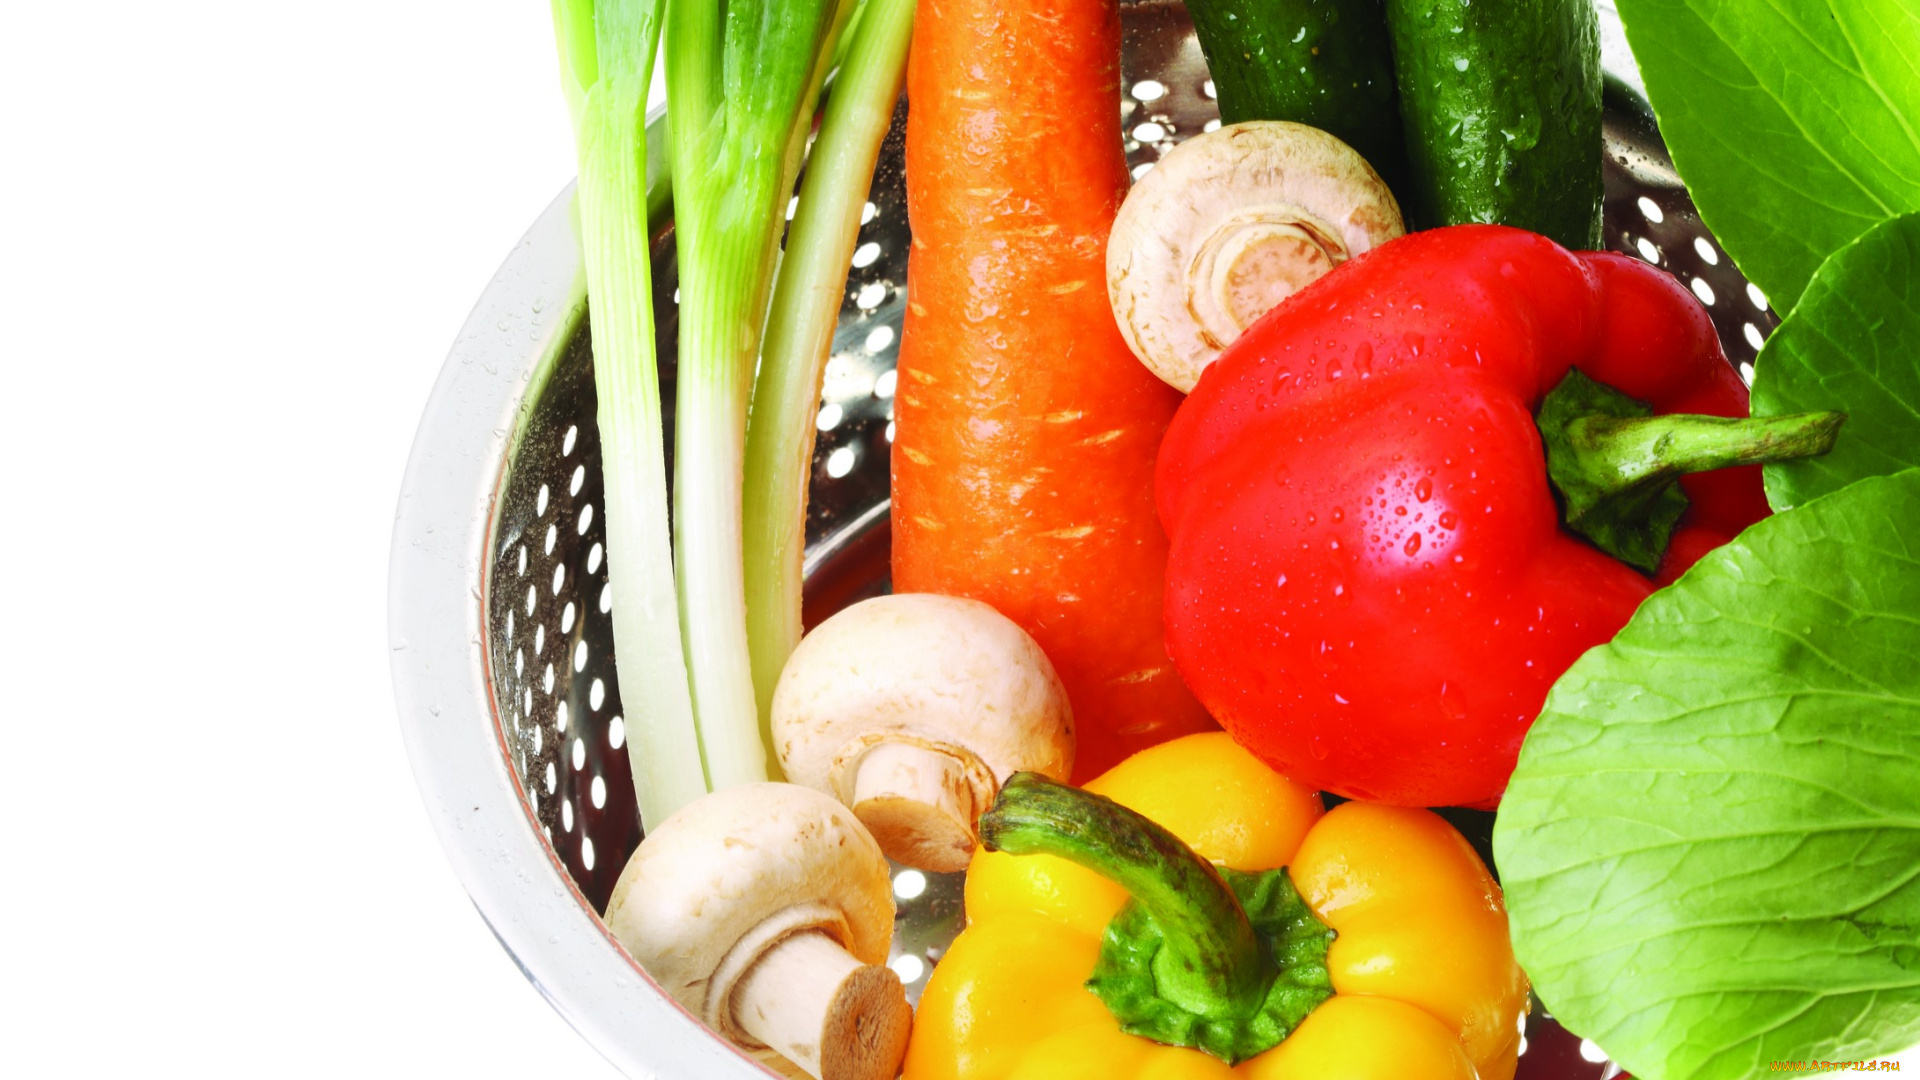 еда, разное, овощи, грибы, шампиньоны, болгарский, перец, морковь, огурец, красный, жёлтый, зелёный, миска, лук, листья, оранжевый, белый, фон